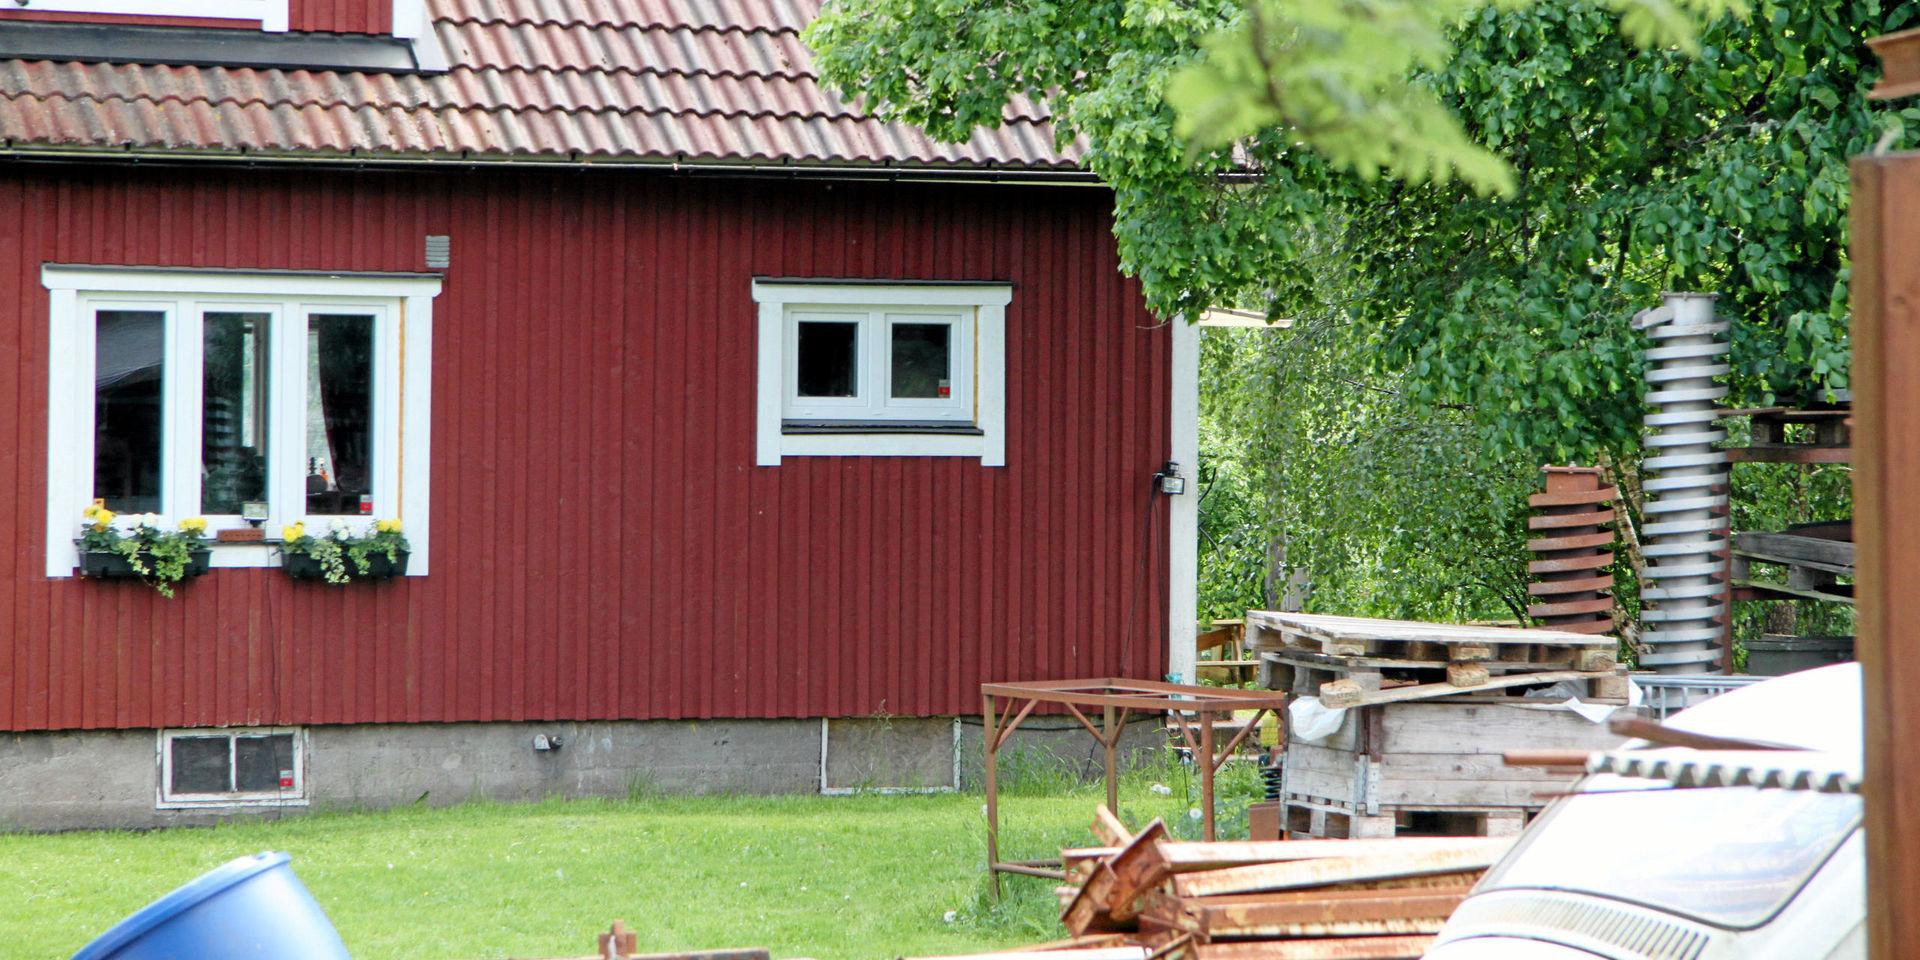 Gårdsmordet inträffade på en gård belägen några kilometer utanför Torups samhälle på kvällen 28 maj 2018.